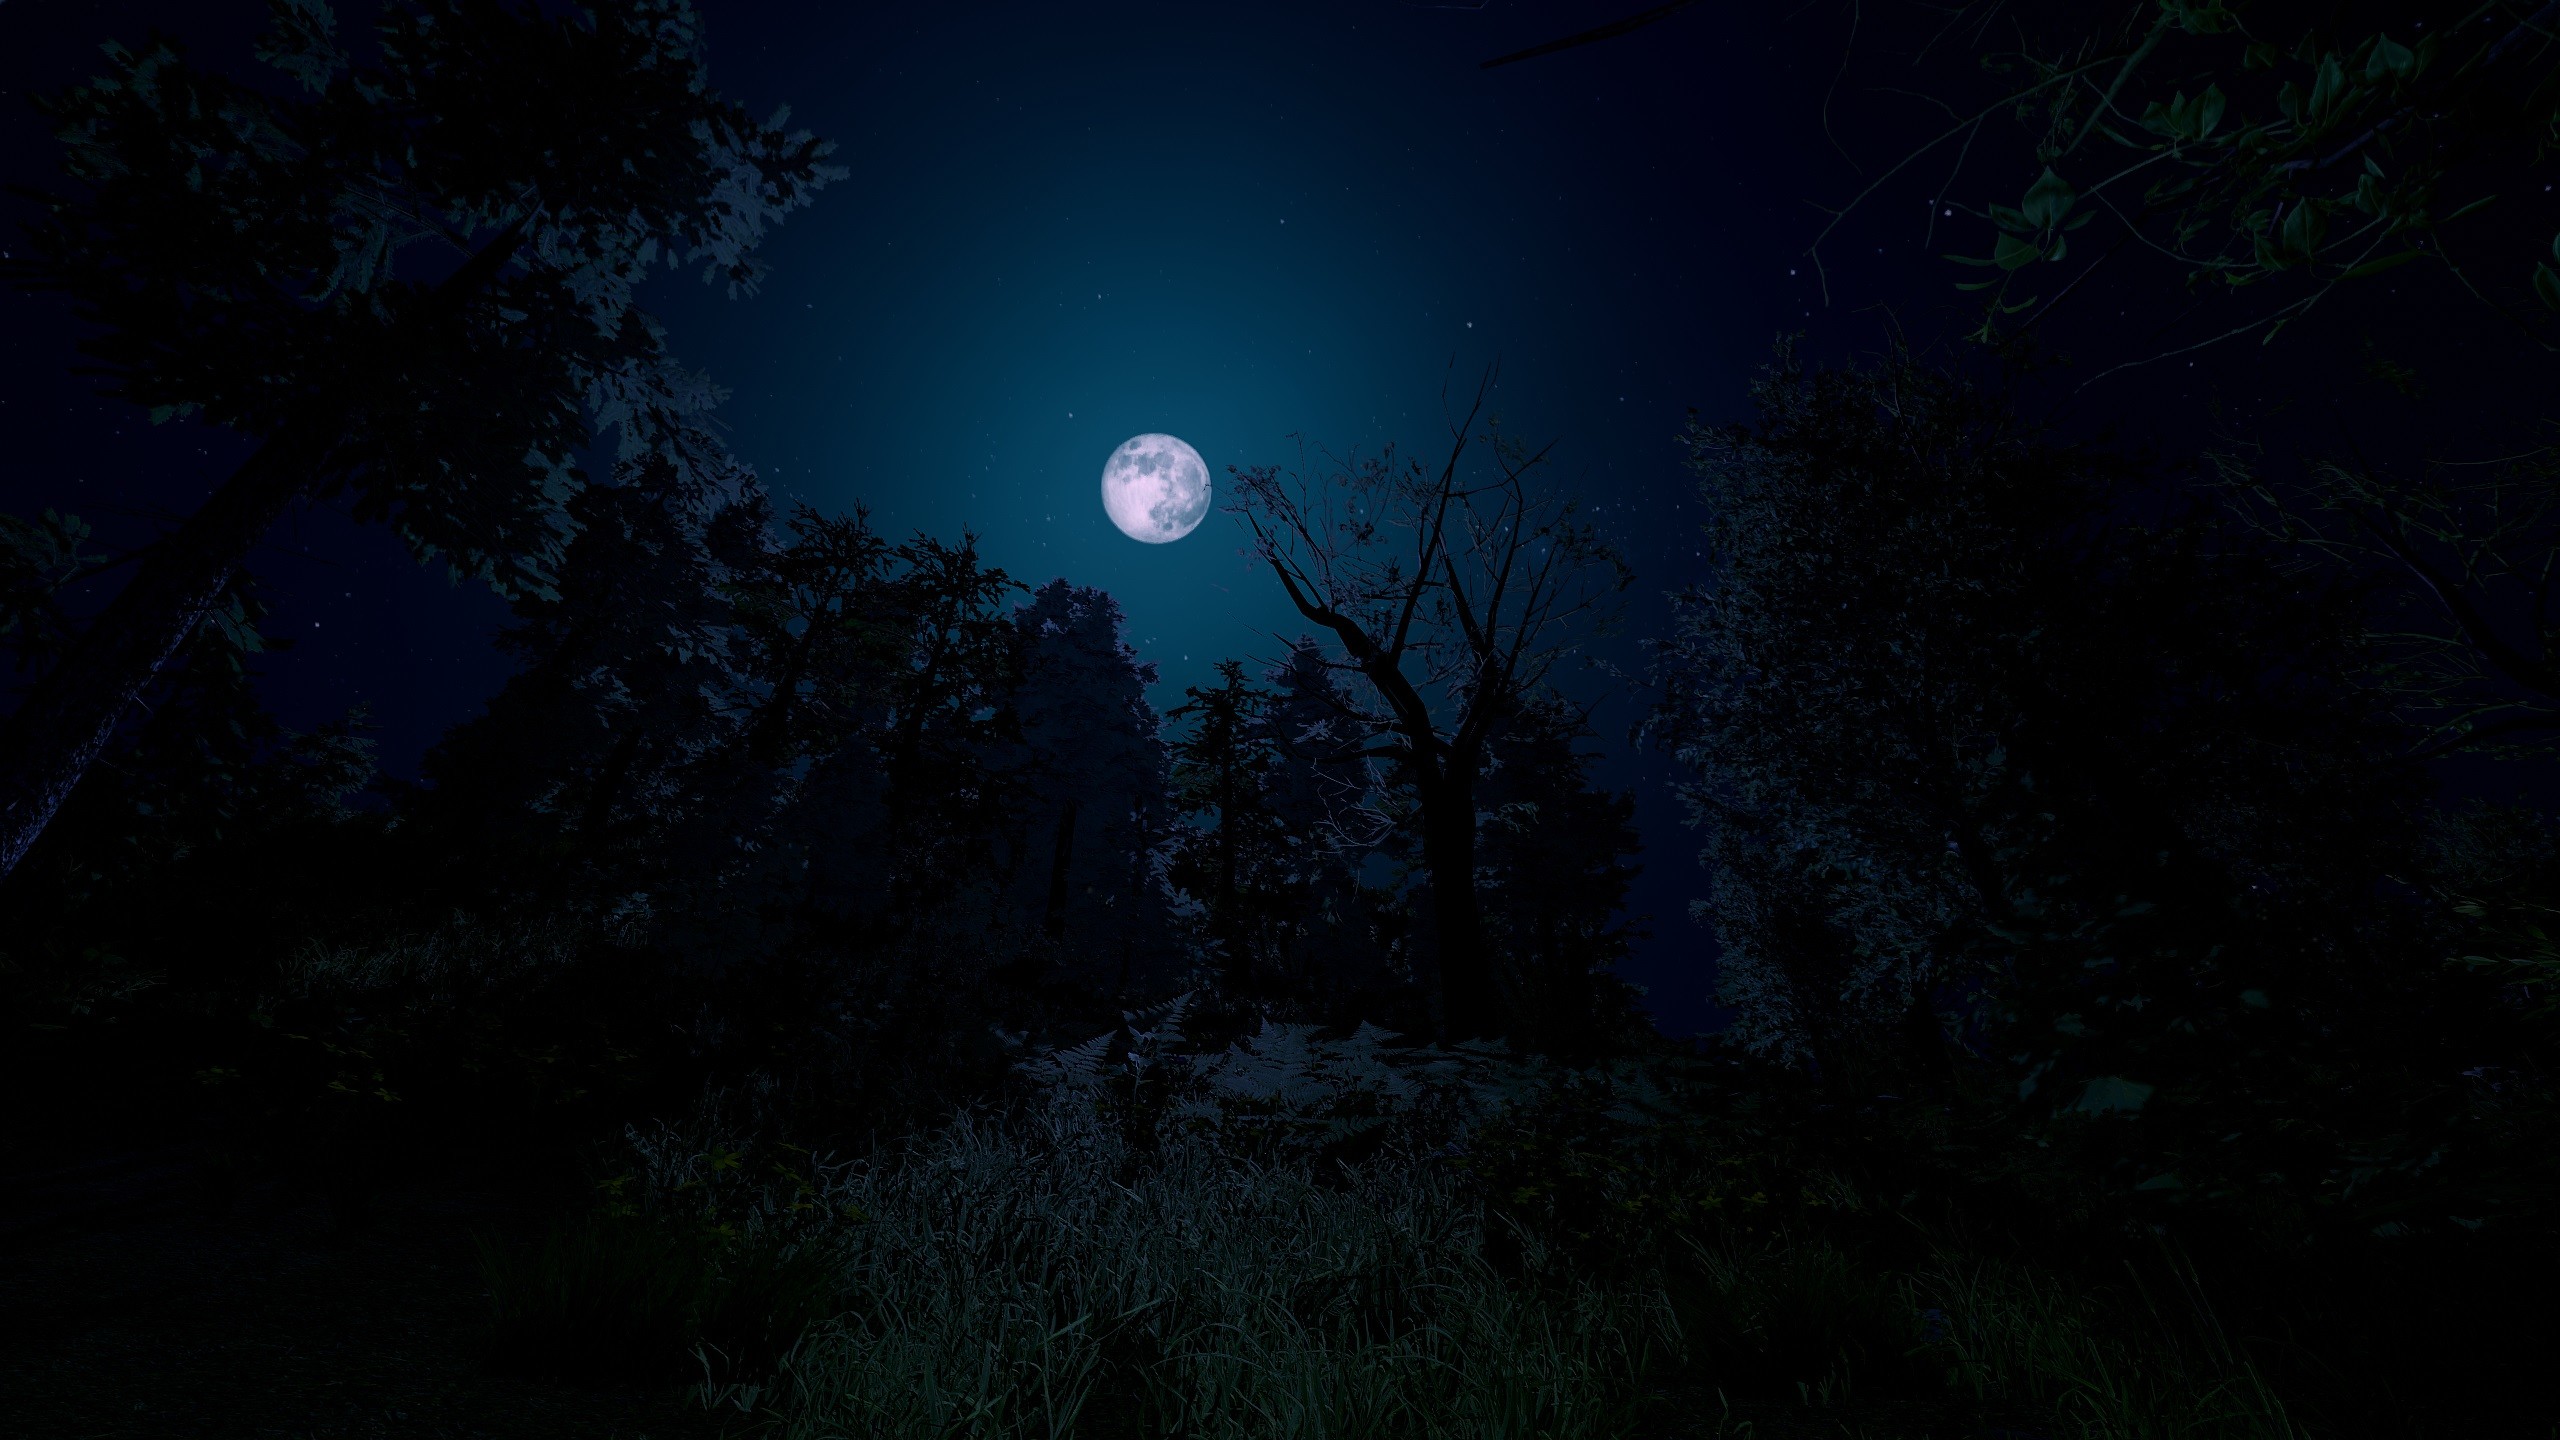 Trials of Wilderness screenshot